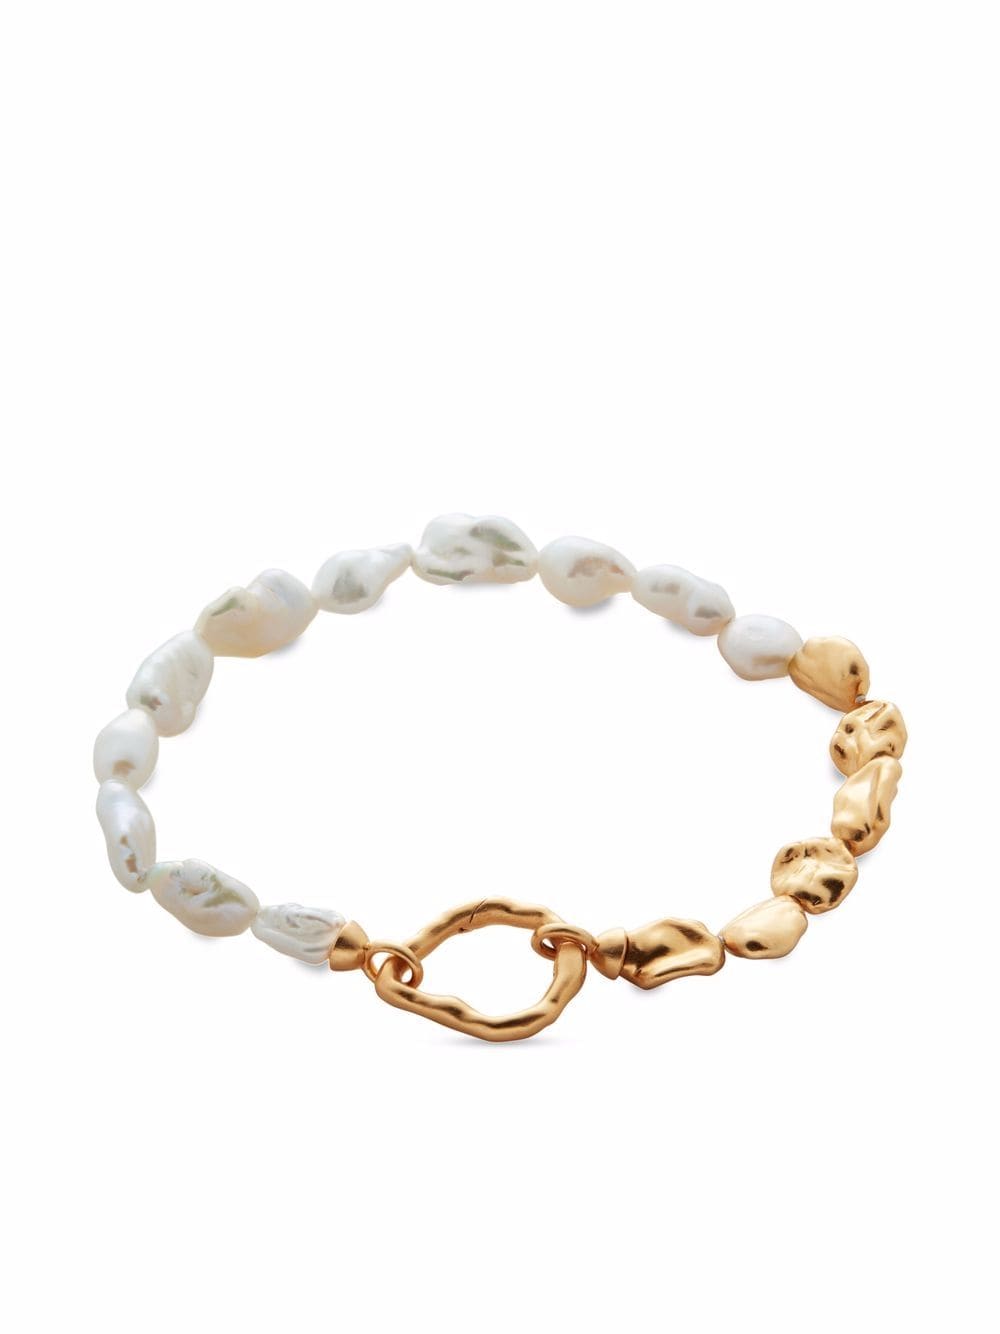 Monica Vinader x Mother of Pearl Keshi pearl bracelet - Gold von Monica Vinader